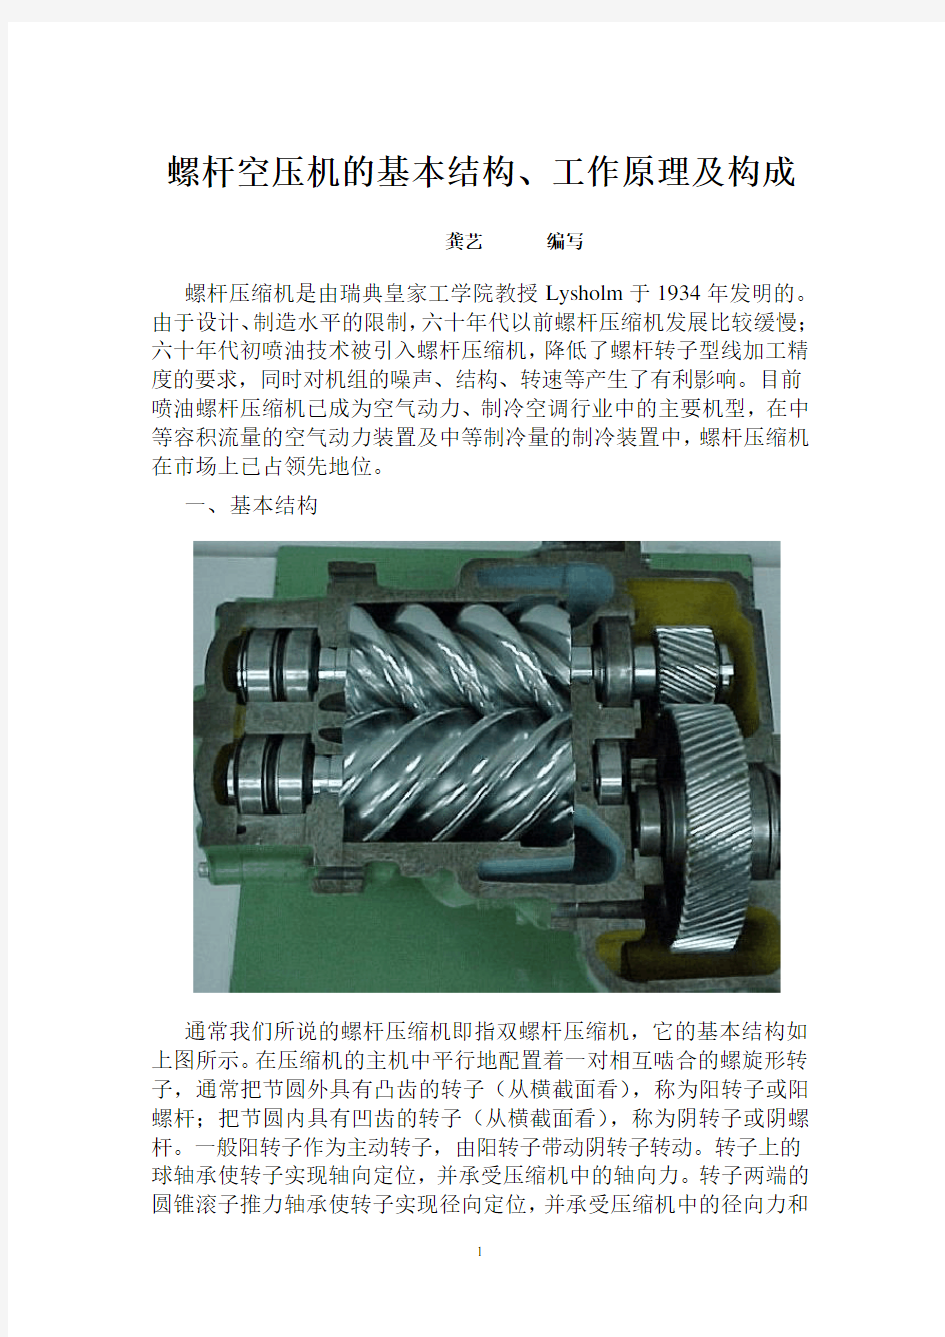 螺杆空压机的基本结构、工作原理及构成